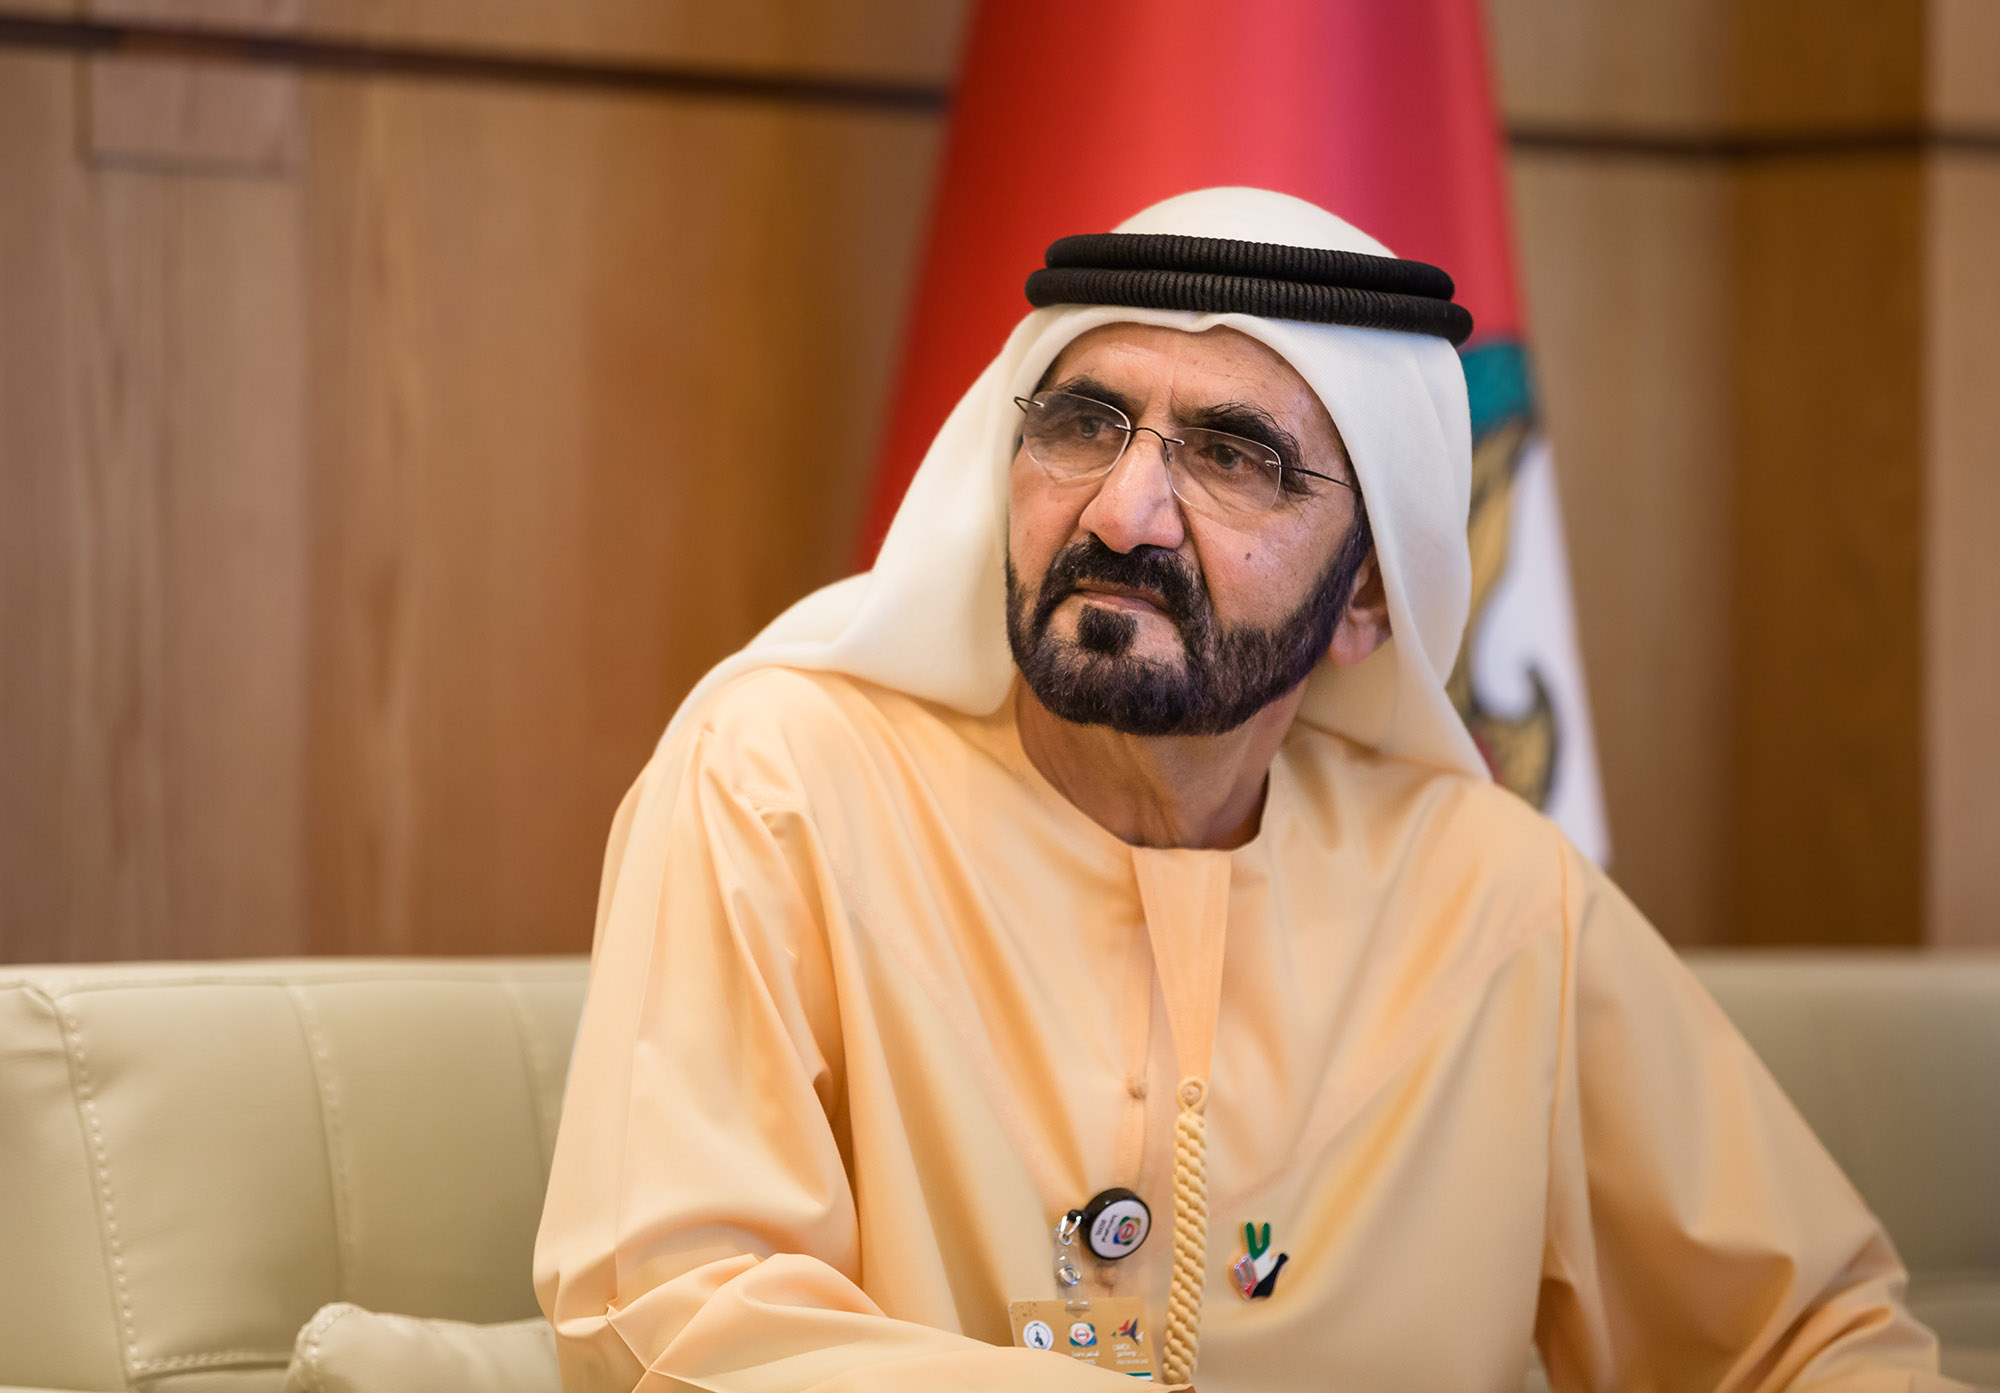 محمد بن راشد: الإمارات في الذكرى الـ 46 أكثر منعة واستقراراً وازدهاراً